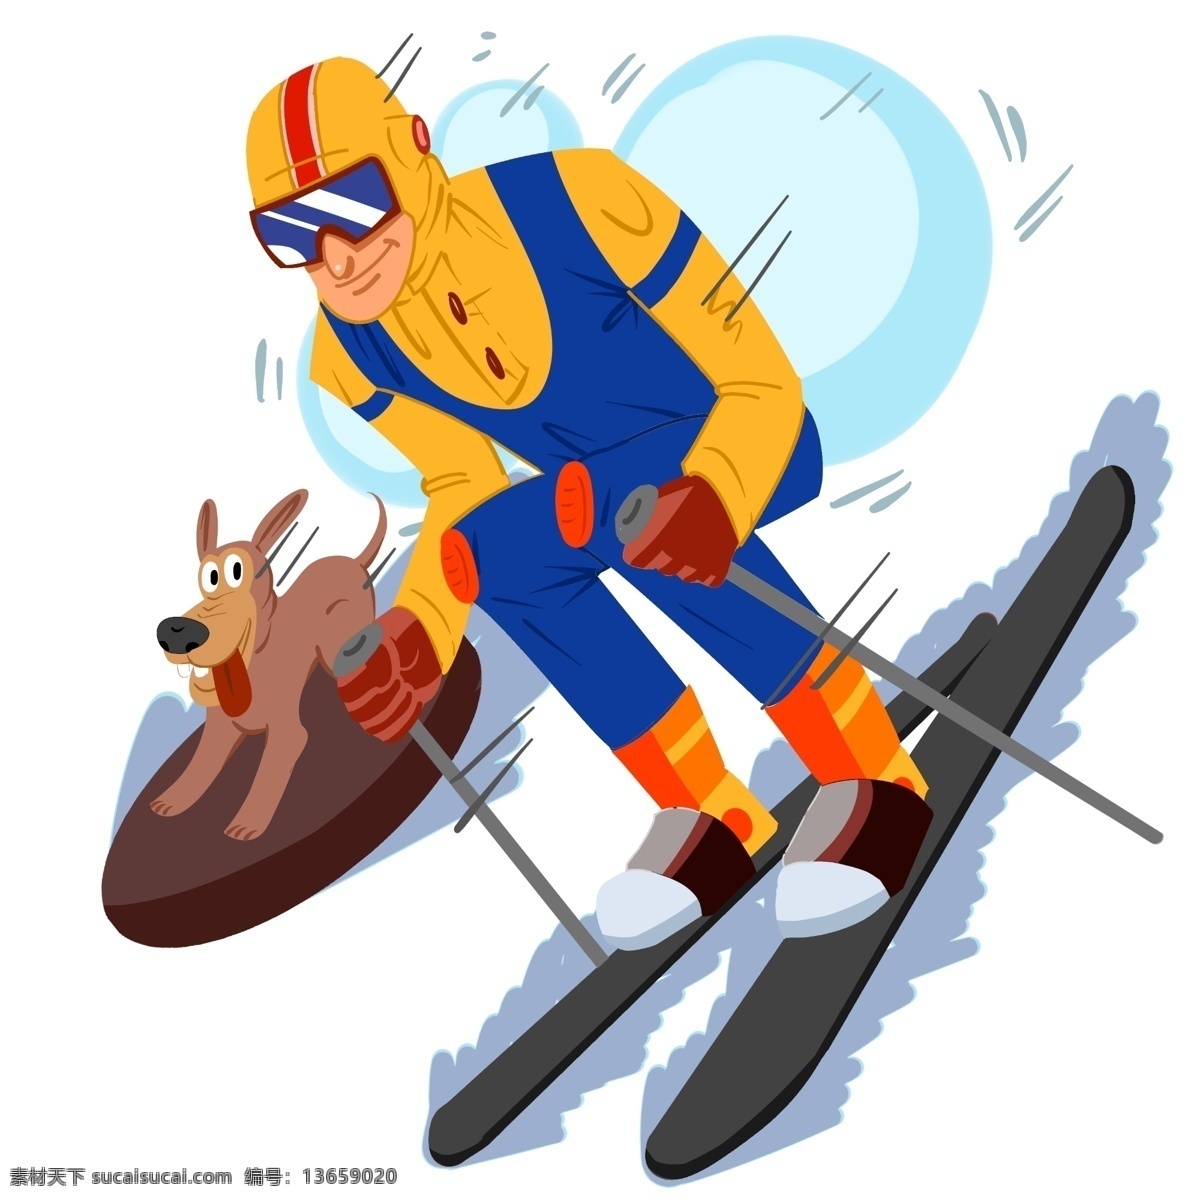 手绘 滑雪 狗 插画 创意旅行插画 恰意的旅行 处处 白雪 旅行 欢快的旅行 手绘旅行插画 冬季旅行